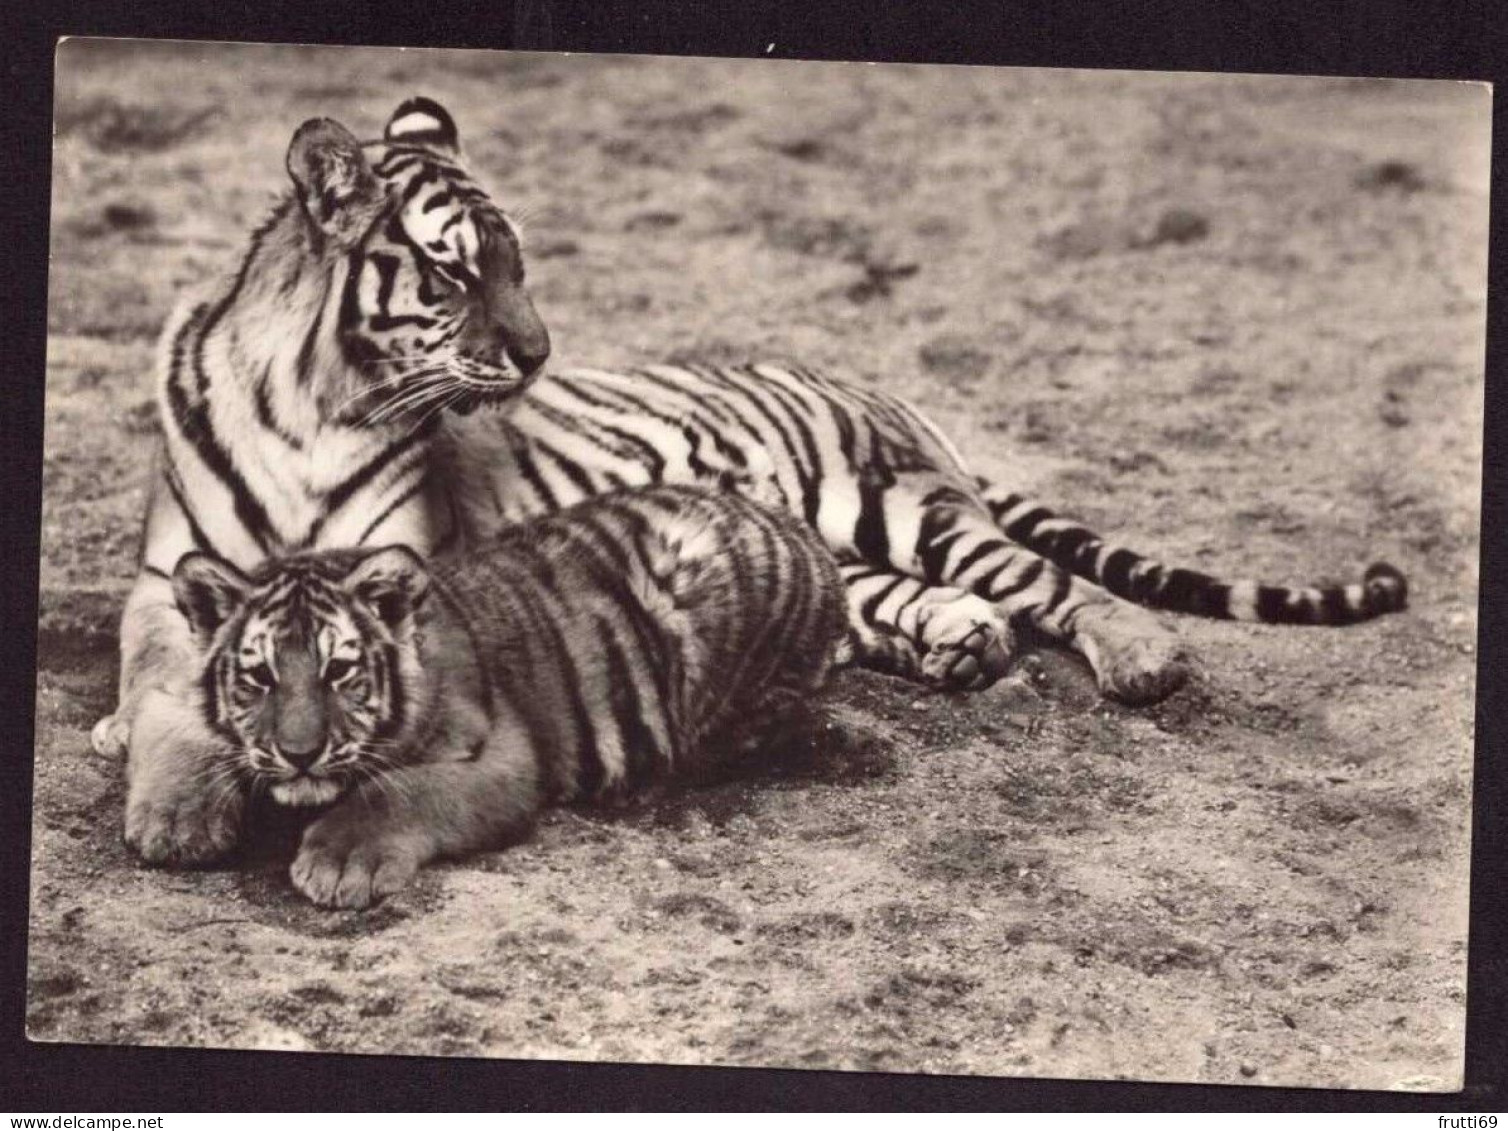 AK 212072 TIGER - Sibirischer Tiger Mit Jungen - Tigres